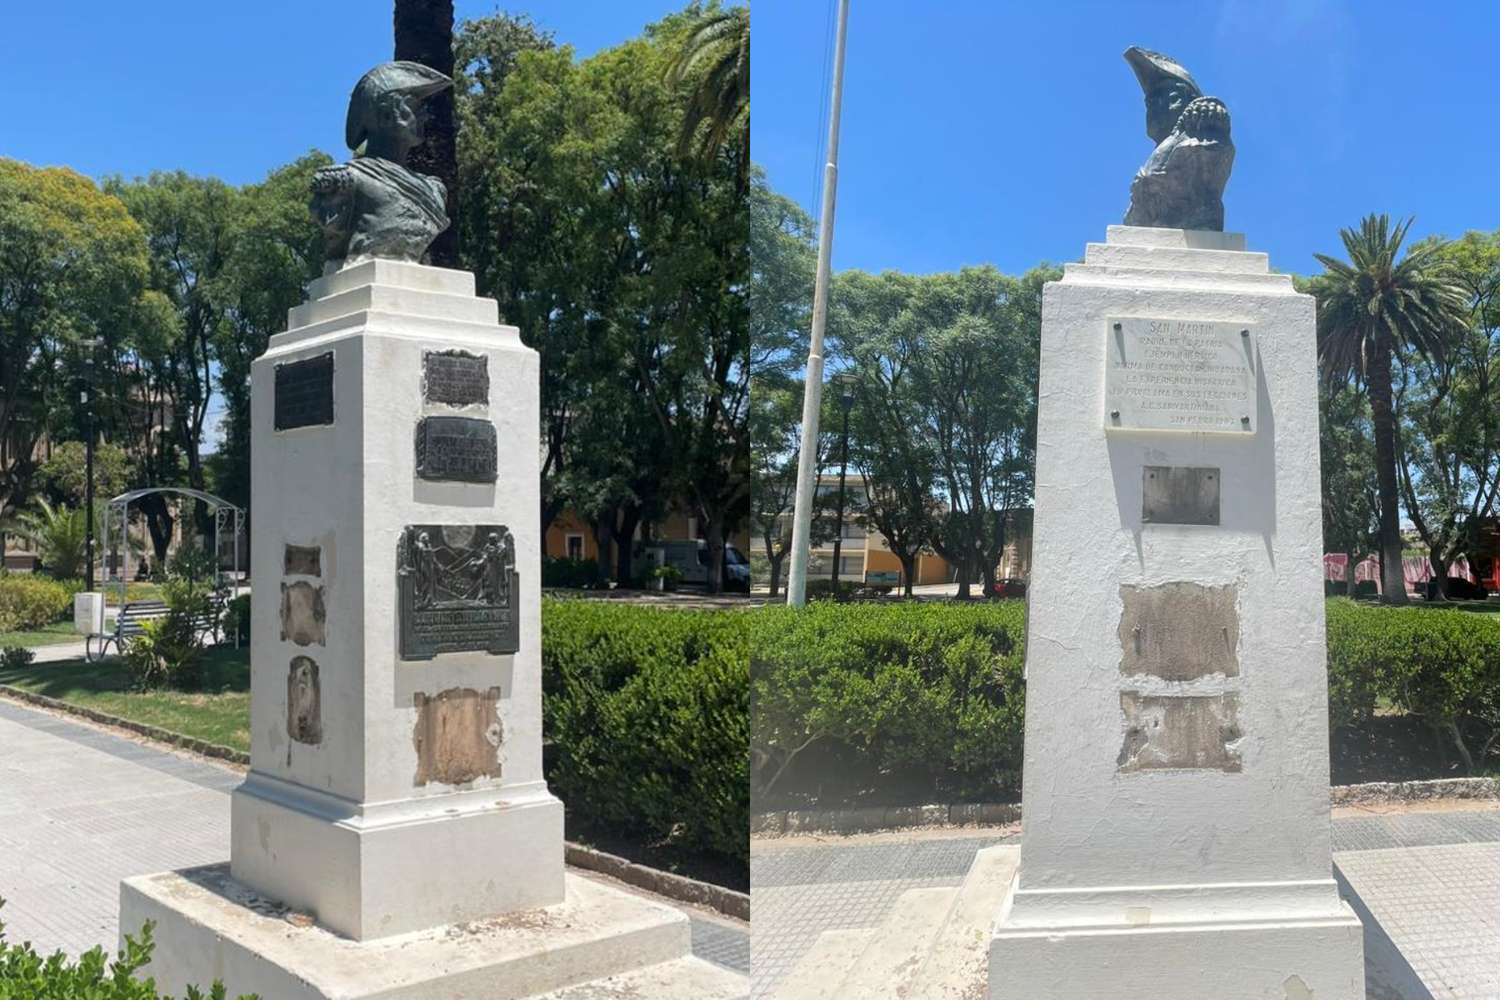 Ya son siete las placas de bronce que faltan en el busto de San Martín en plaza Constitución